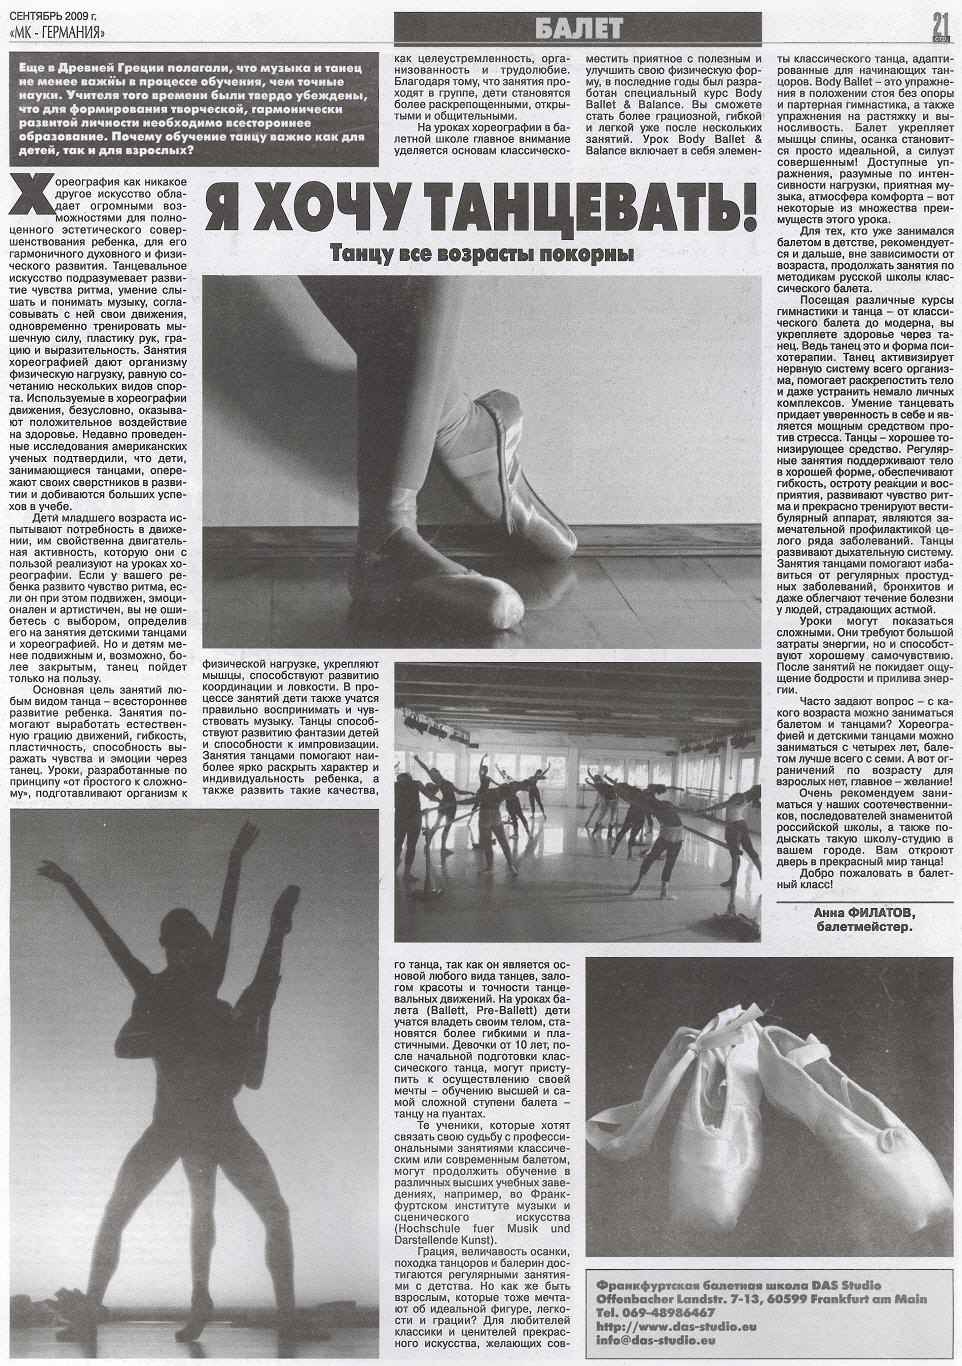 Я хочу
              танцеватъ. Статья в МК-Германия, Сентябрь 2009 I will
              dance! Ich will tanzen!